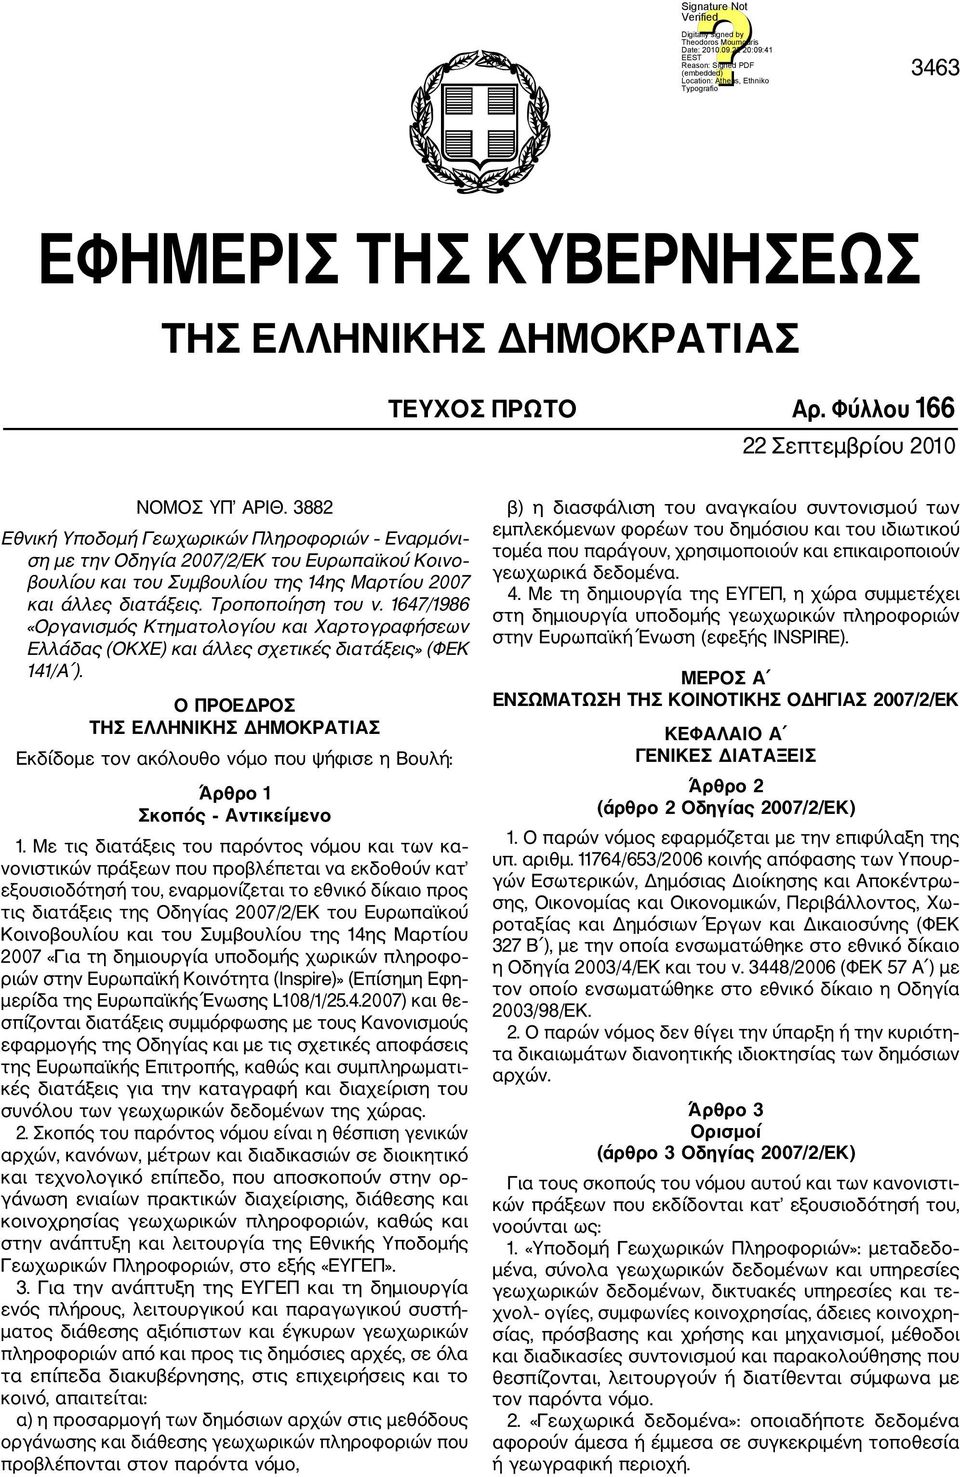 1647/1986 «Οργανισμός Κτηματολογίου και Χαρτογραφήσεων Ελλάδας (ΟΚΧΕ) και άλλες σχετικές διατάξεις» (ΦΕΚ 141/Α ).